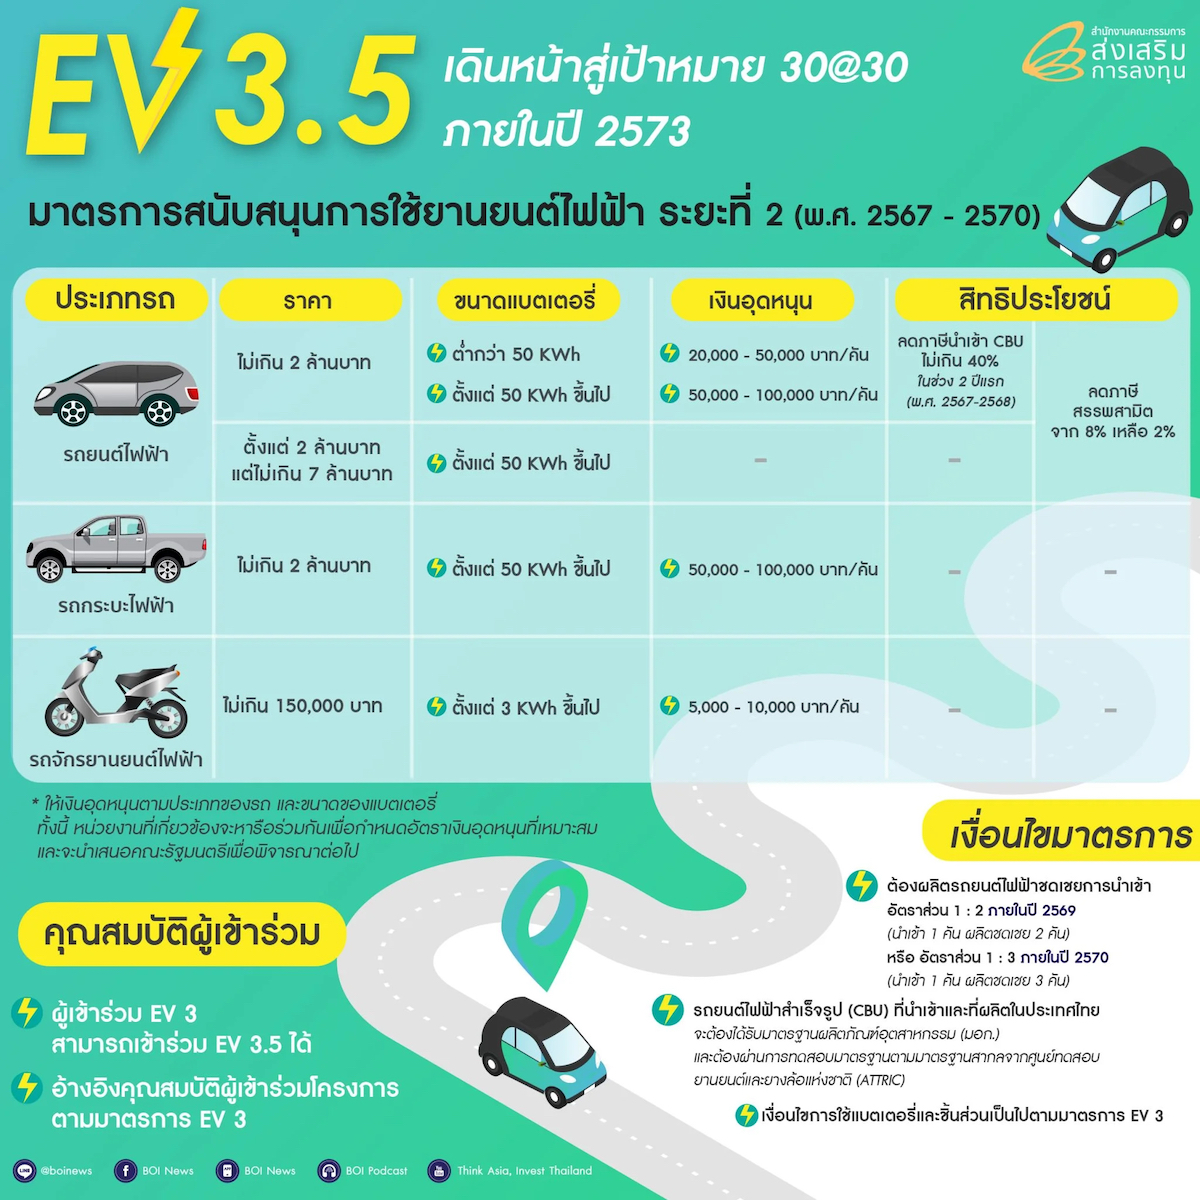 รถยนต์ไฟฟ้า EV3.5 เงินสนับสนุน